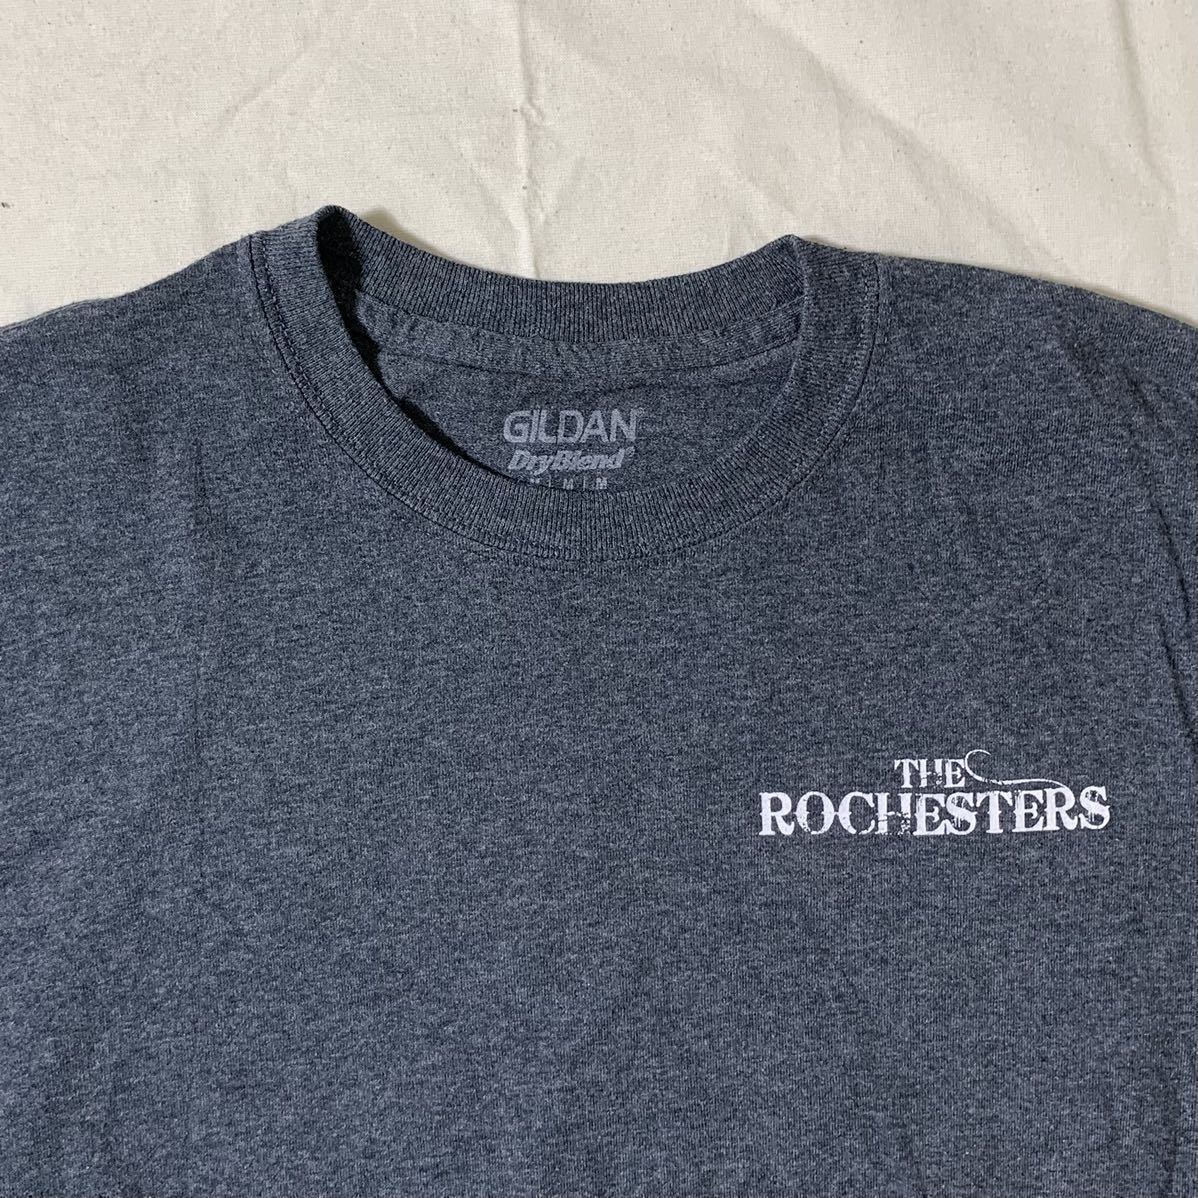 TheROCHESTERS/GILDAN(USA)ビンテージグラフィックTシャツ